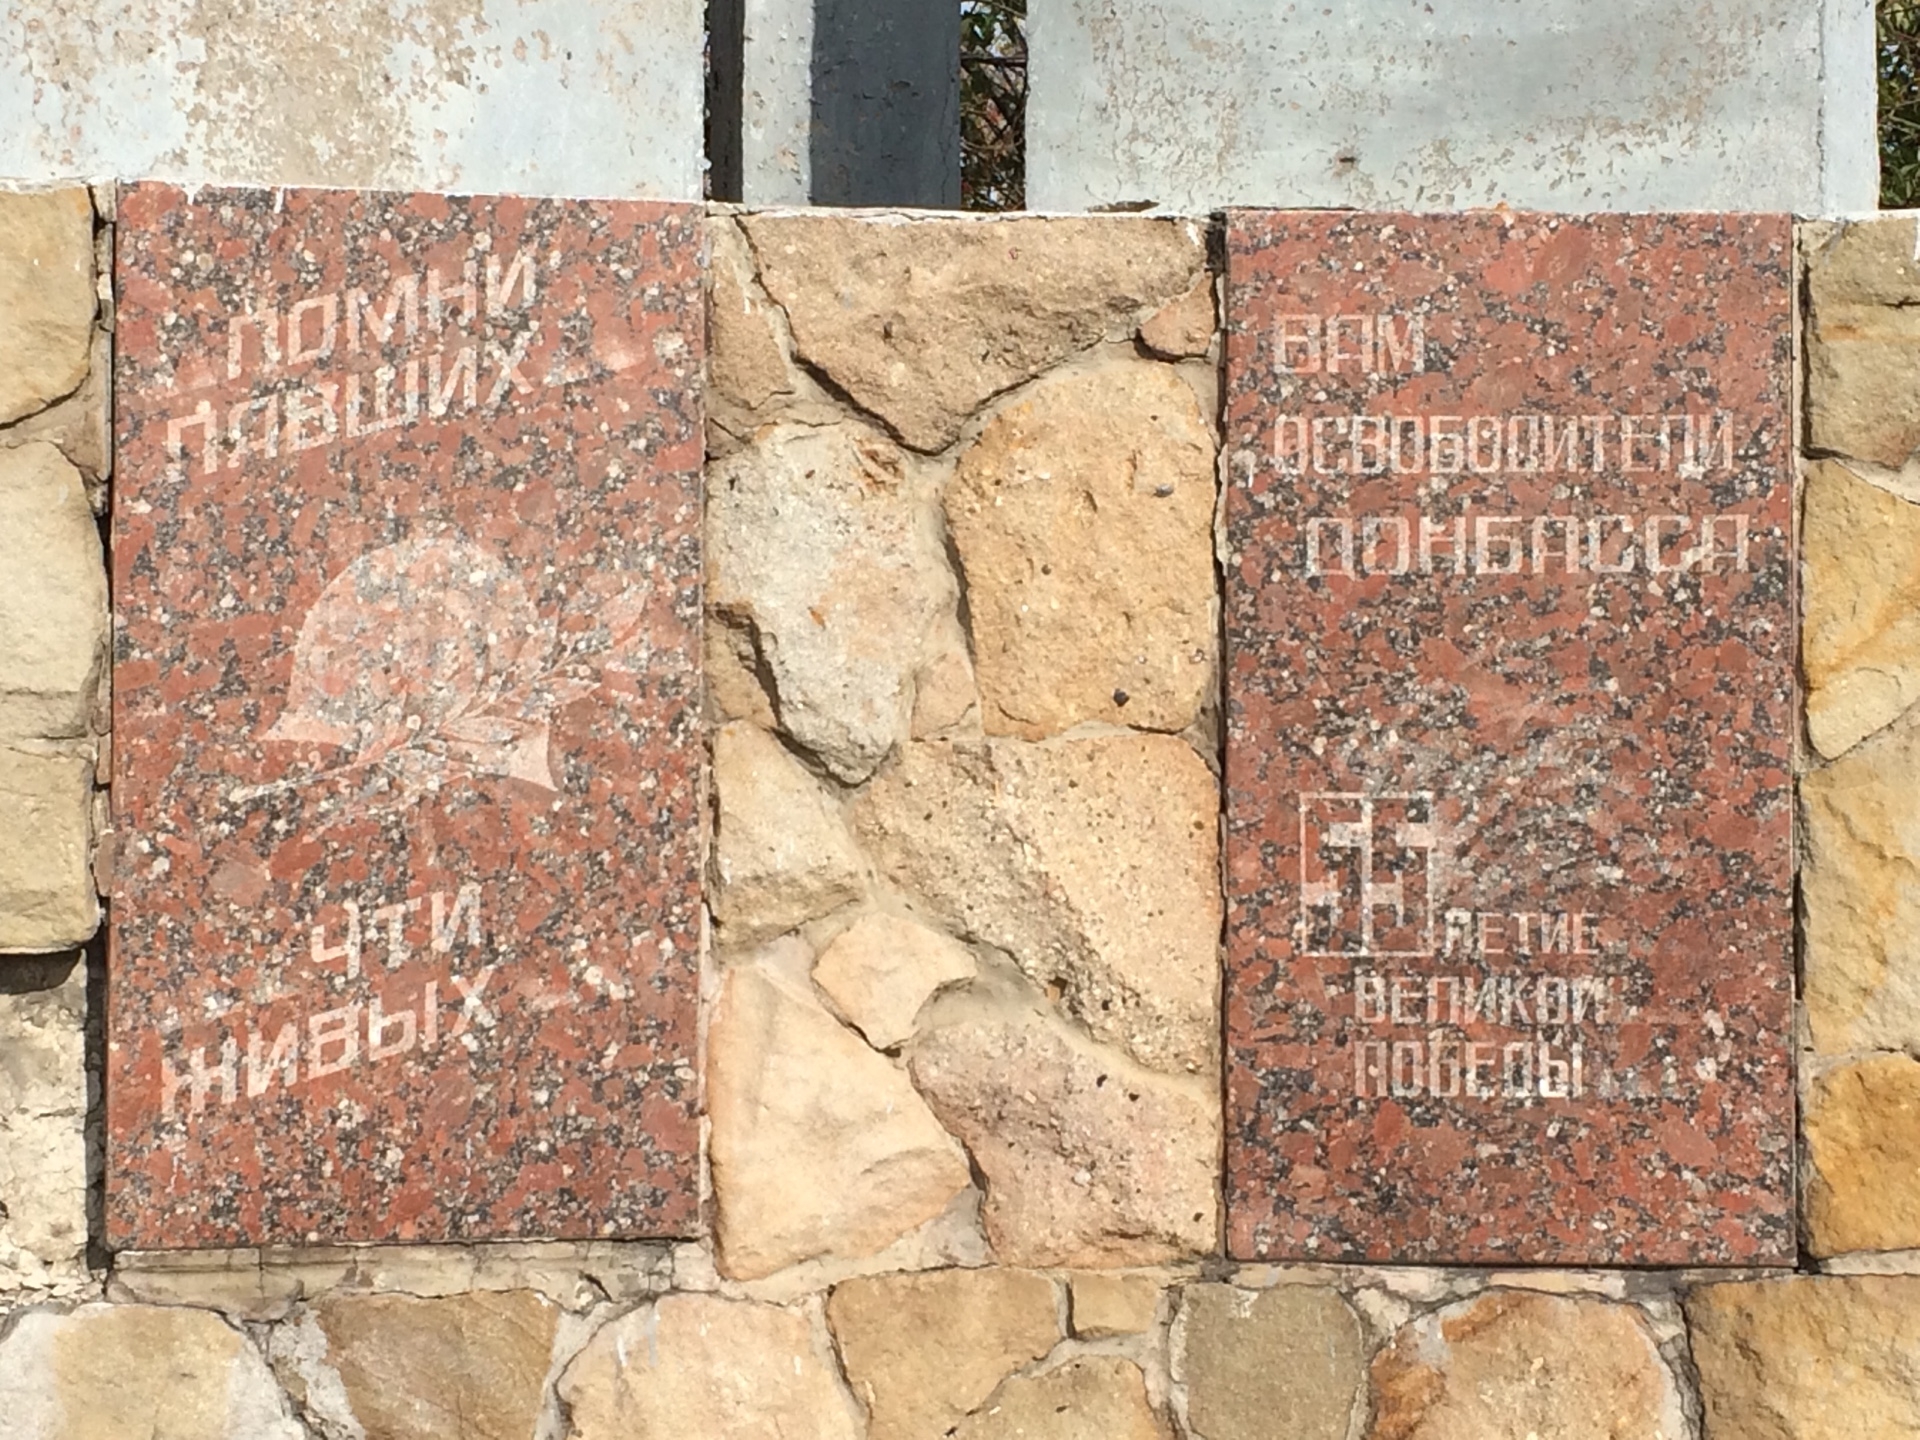 Братская могила на въезде в пгт Святогоровка Добропольского района